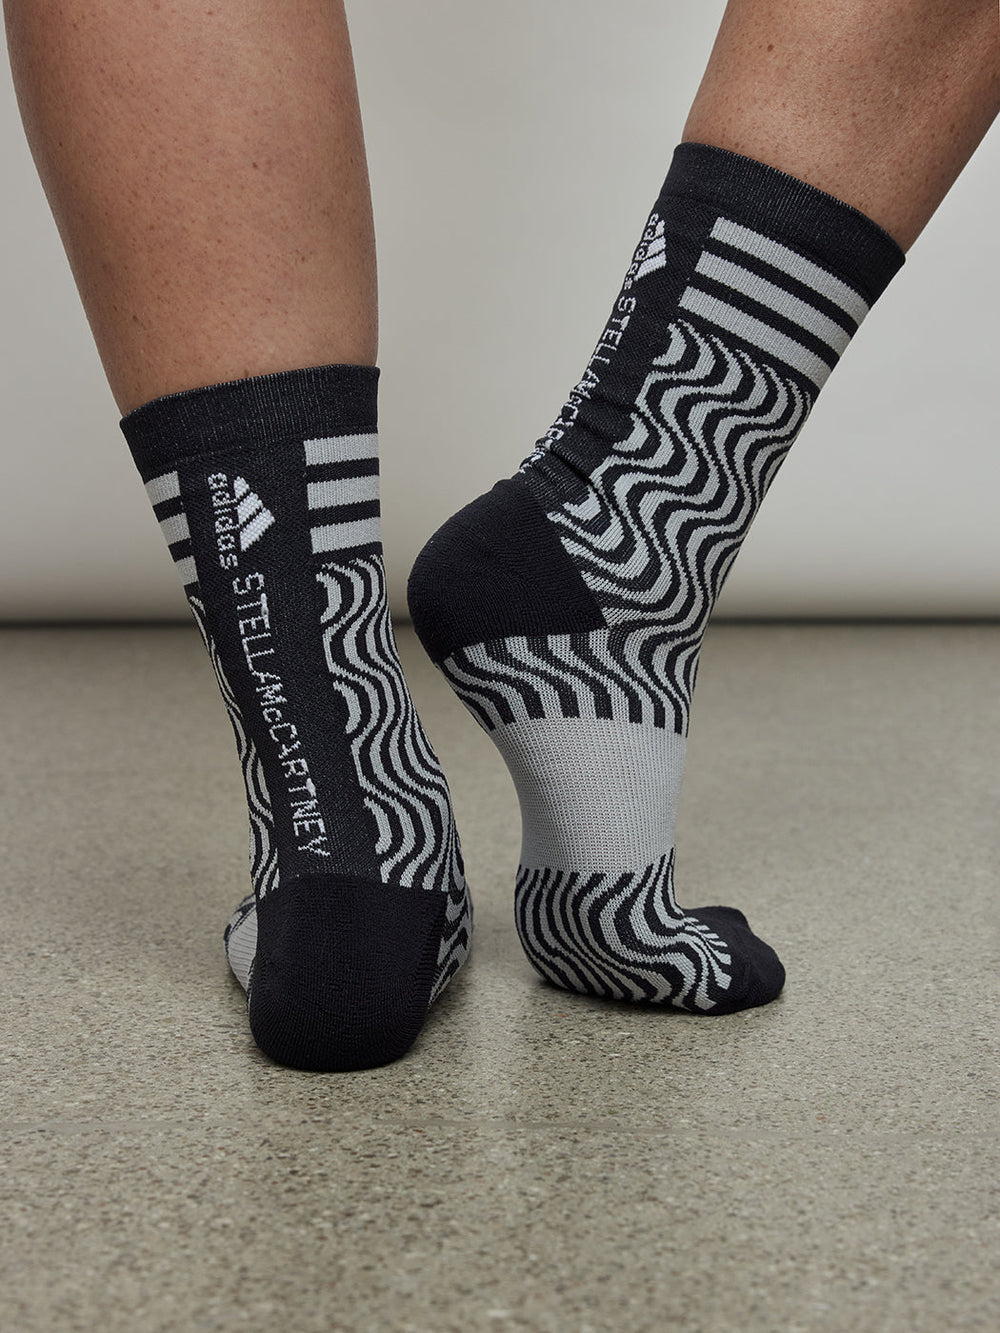 Adidas By Stella Mccartney Crew Socks - Black/Clear Onix/White